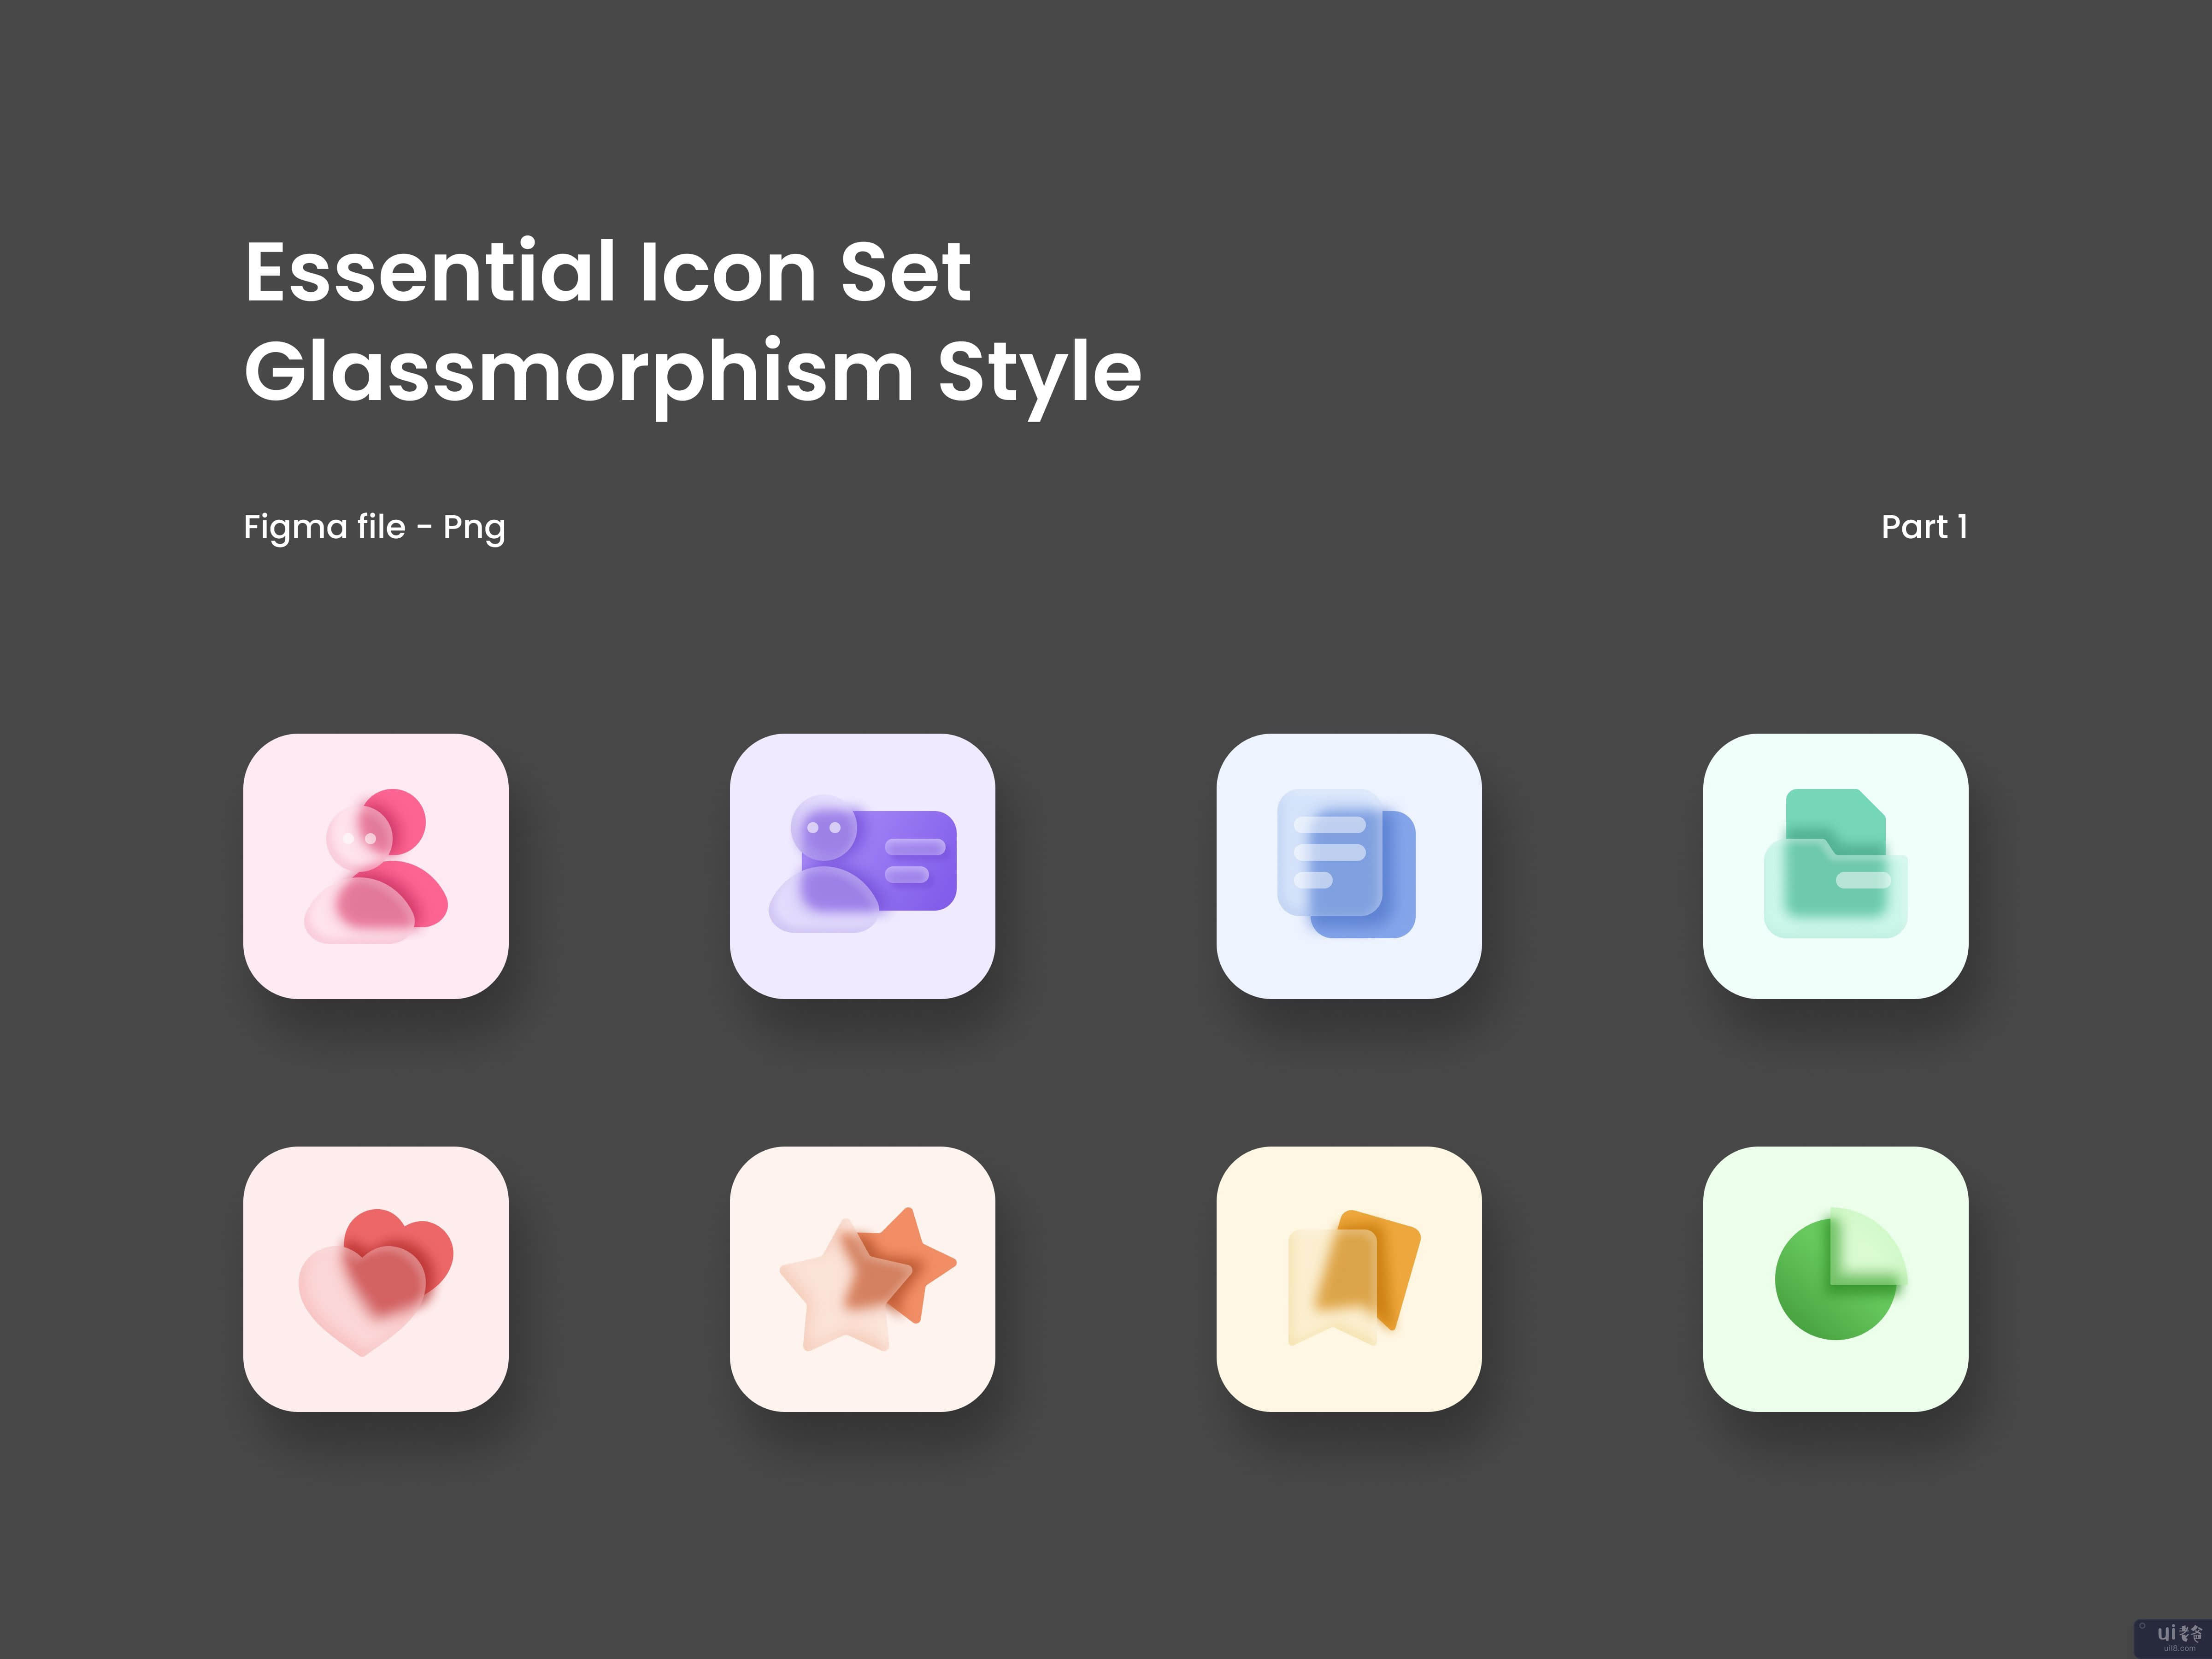 基本图标集 Glassmorphism 样式（第 1 部分）(Essential Icon Set Glassmorphism Style (Part 1))插图